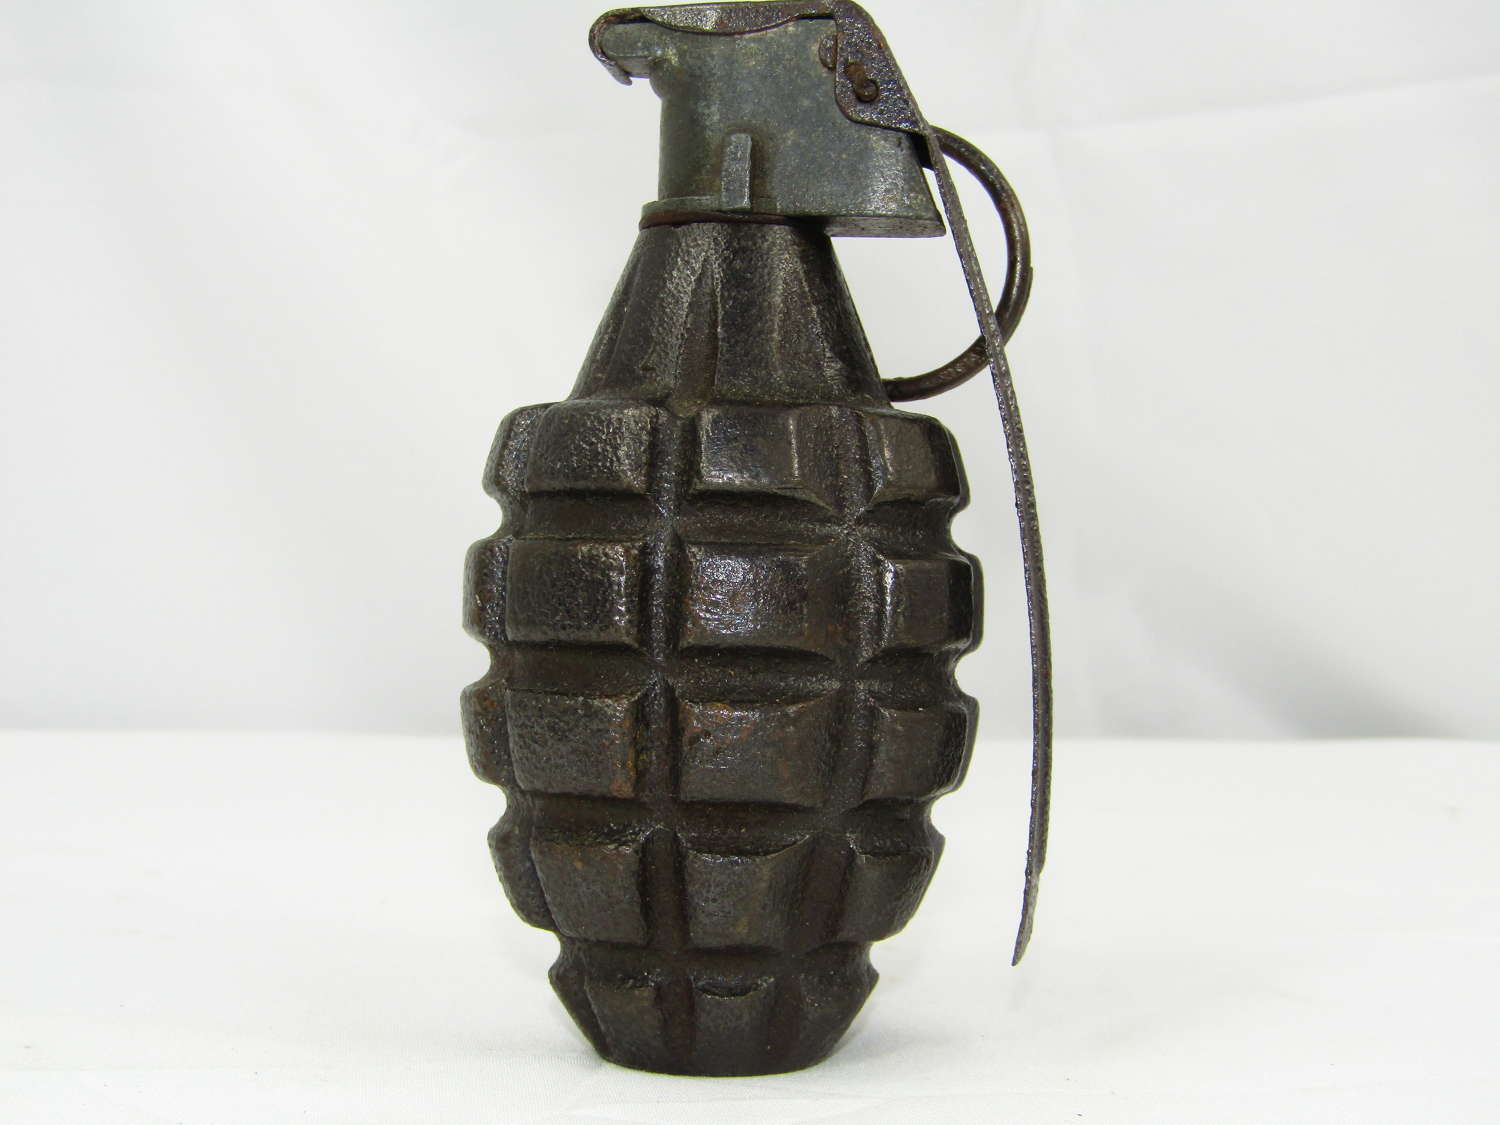 WW2 U.S. Pineapple grenade